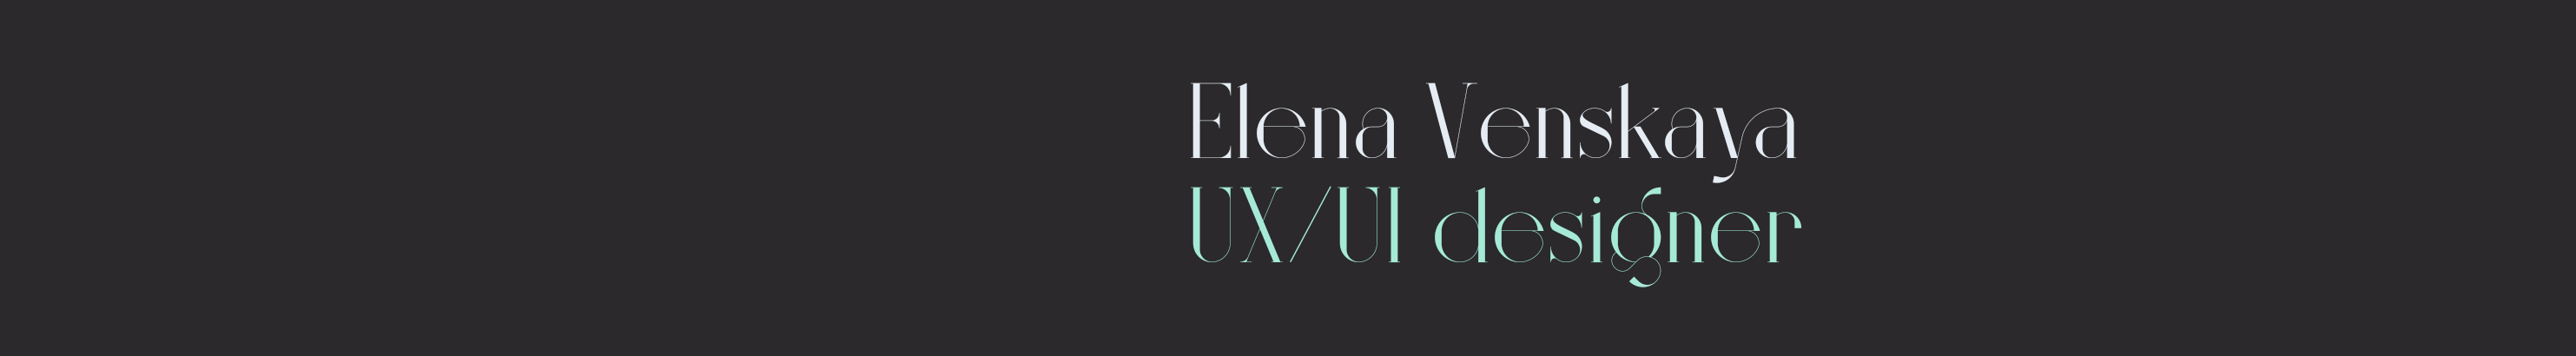 Elena Venskaya's profile banner